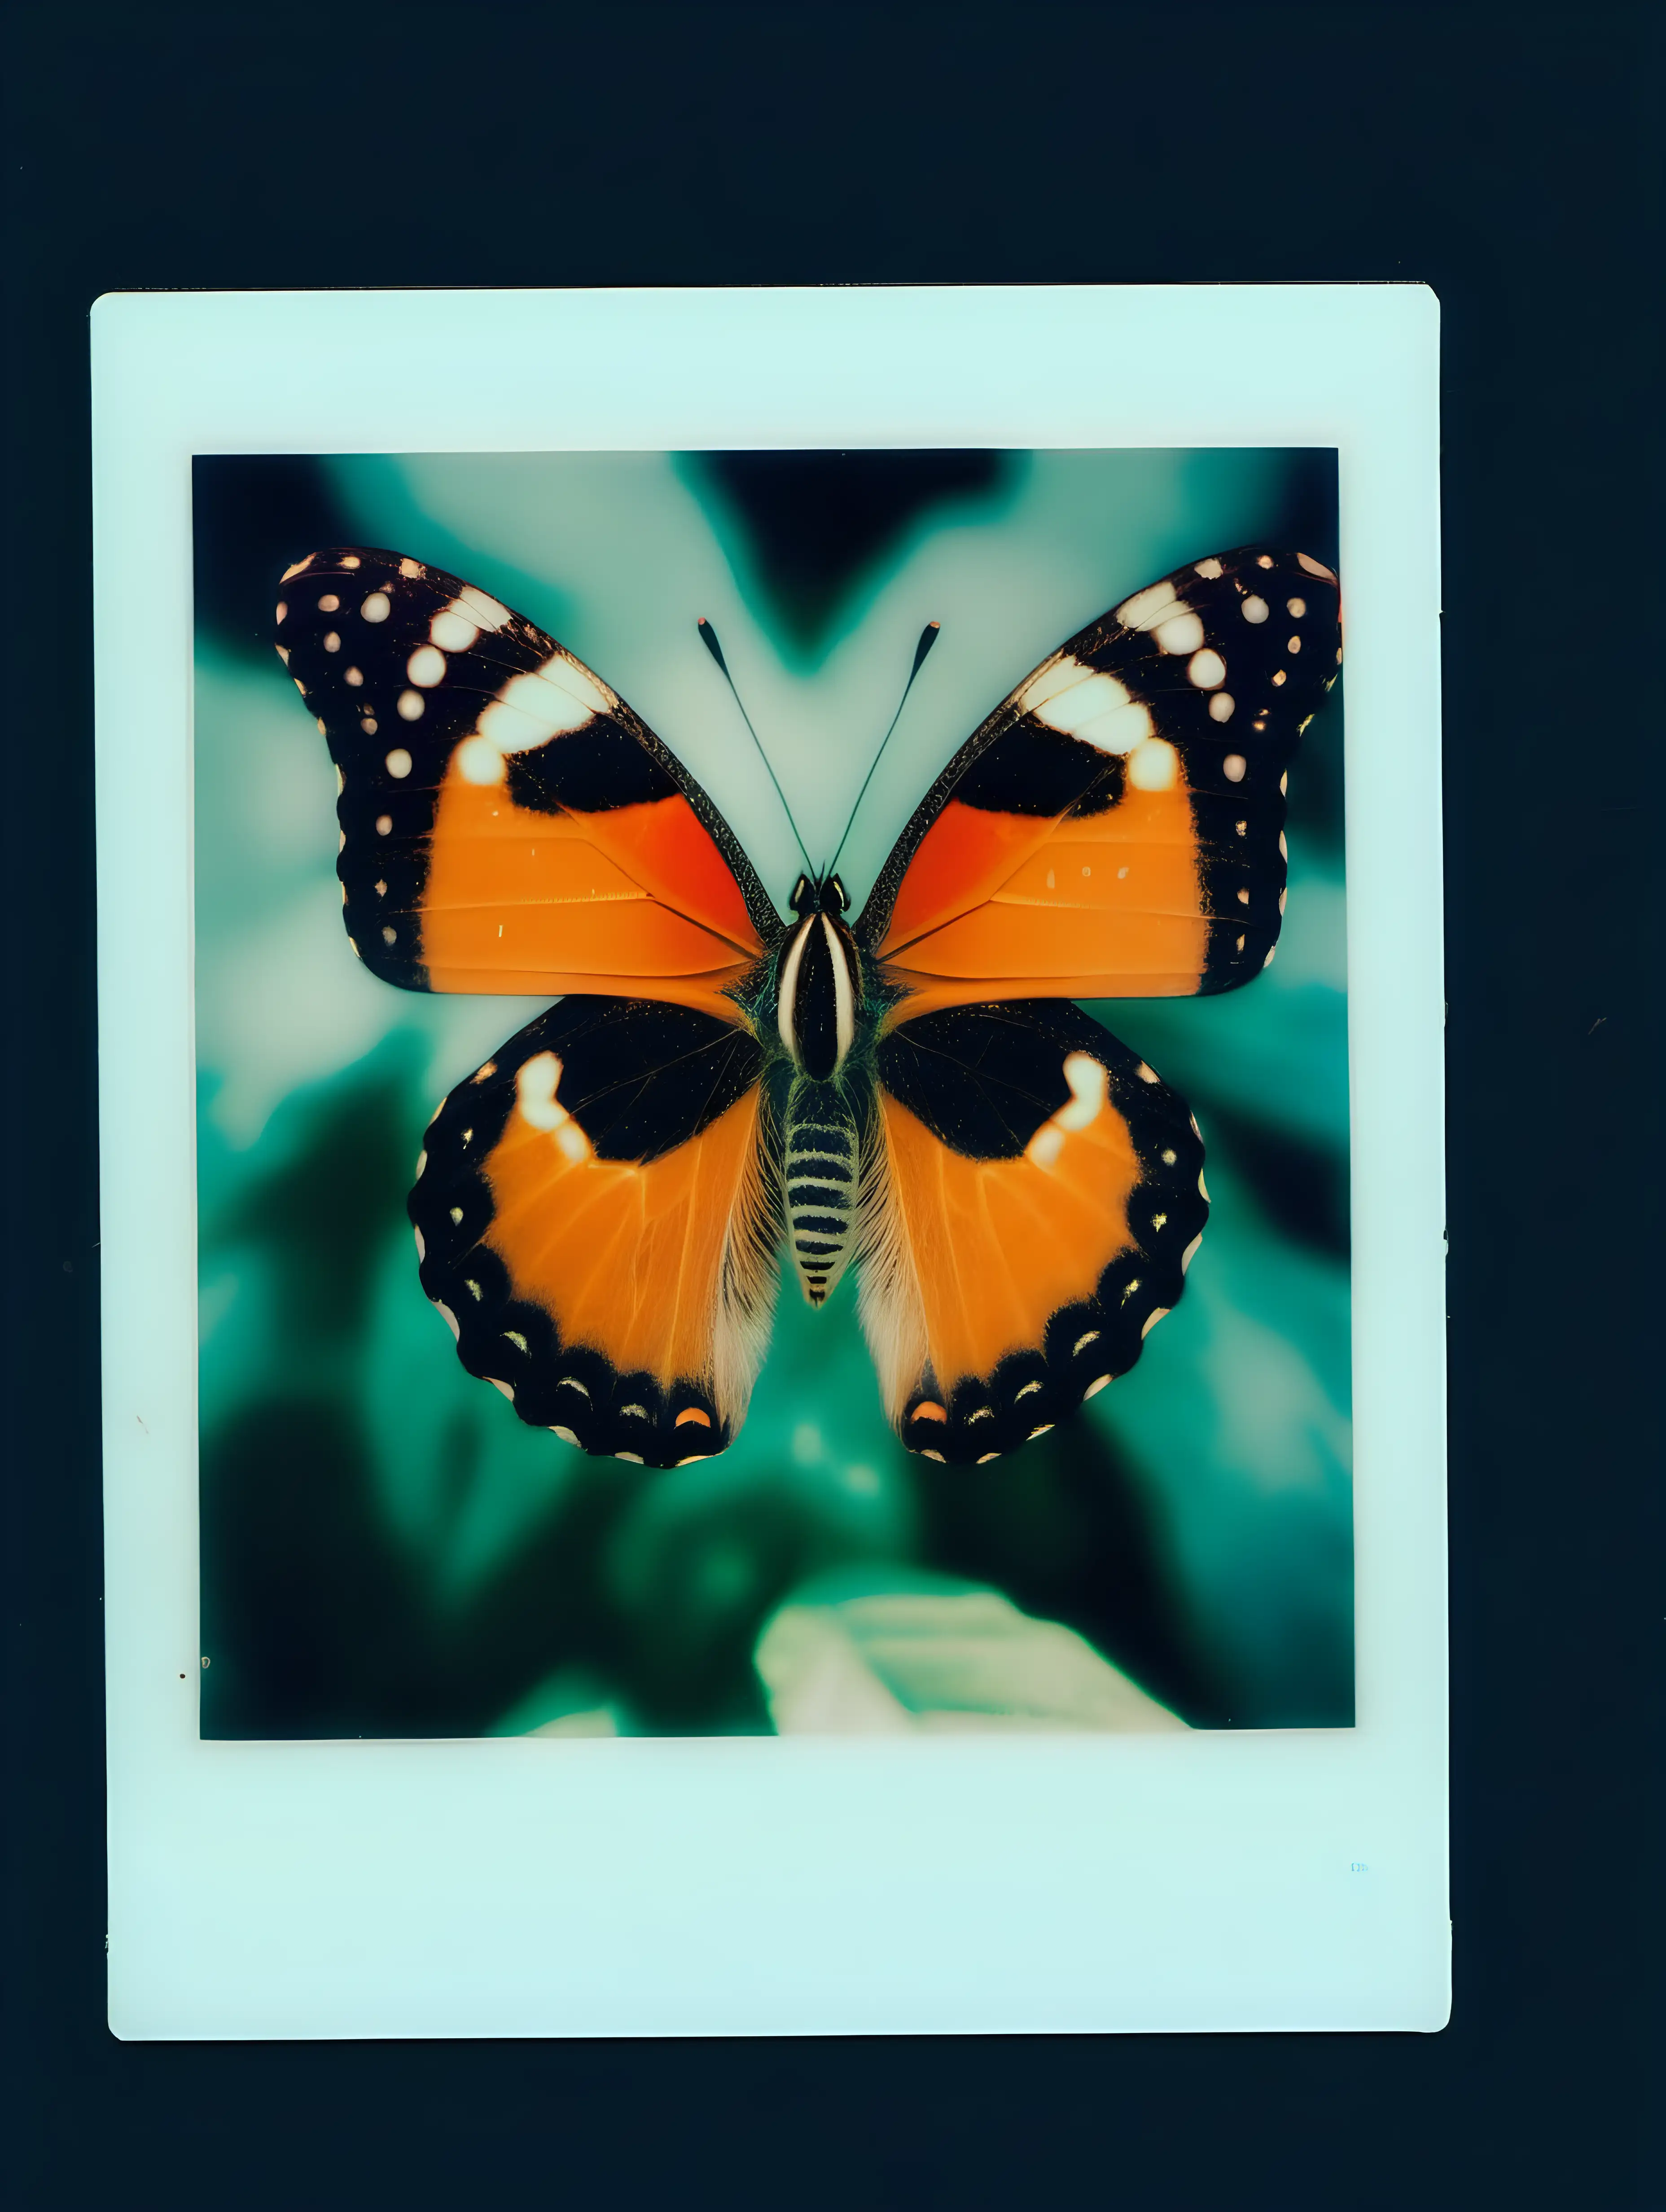 Vibrant Butterfly Captured on Polaroid